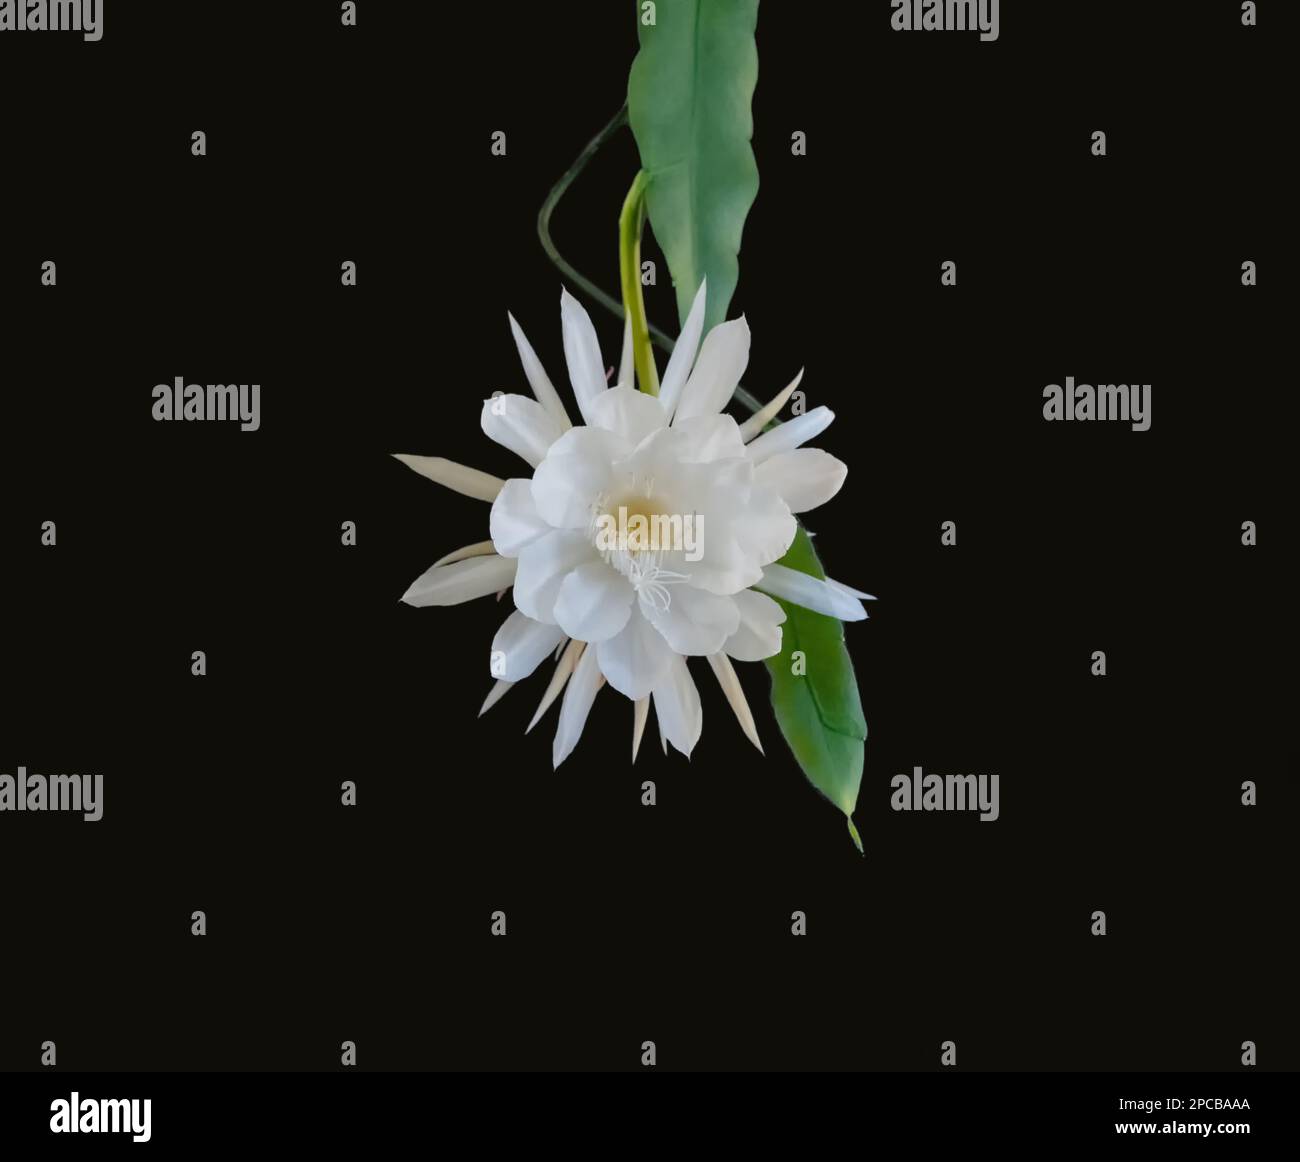 Vista frontal de una flor blanca de la reina de la noche (Epiphyllum oxypetalum) Planta de cactus, floración nocturna, con encanto, hechizmente fragante l Foto de stock